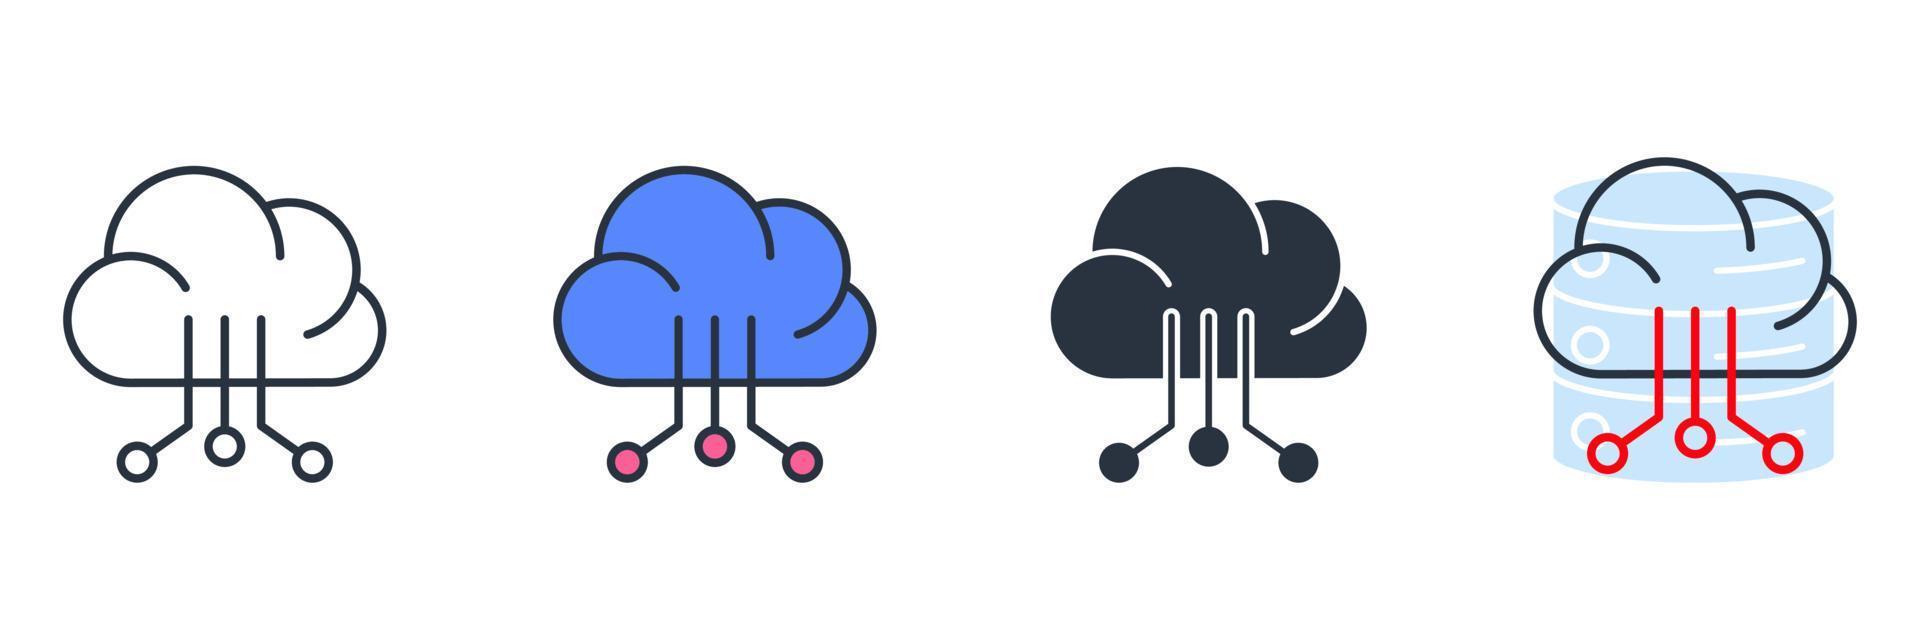 illustrazione vettoriale del logo dell'icona della tecnologia cloud. modello di simbolo di tecnologia cloud per la raccolta di grafica e web design